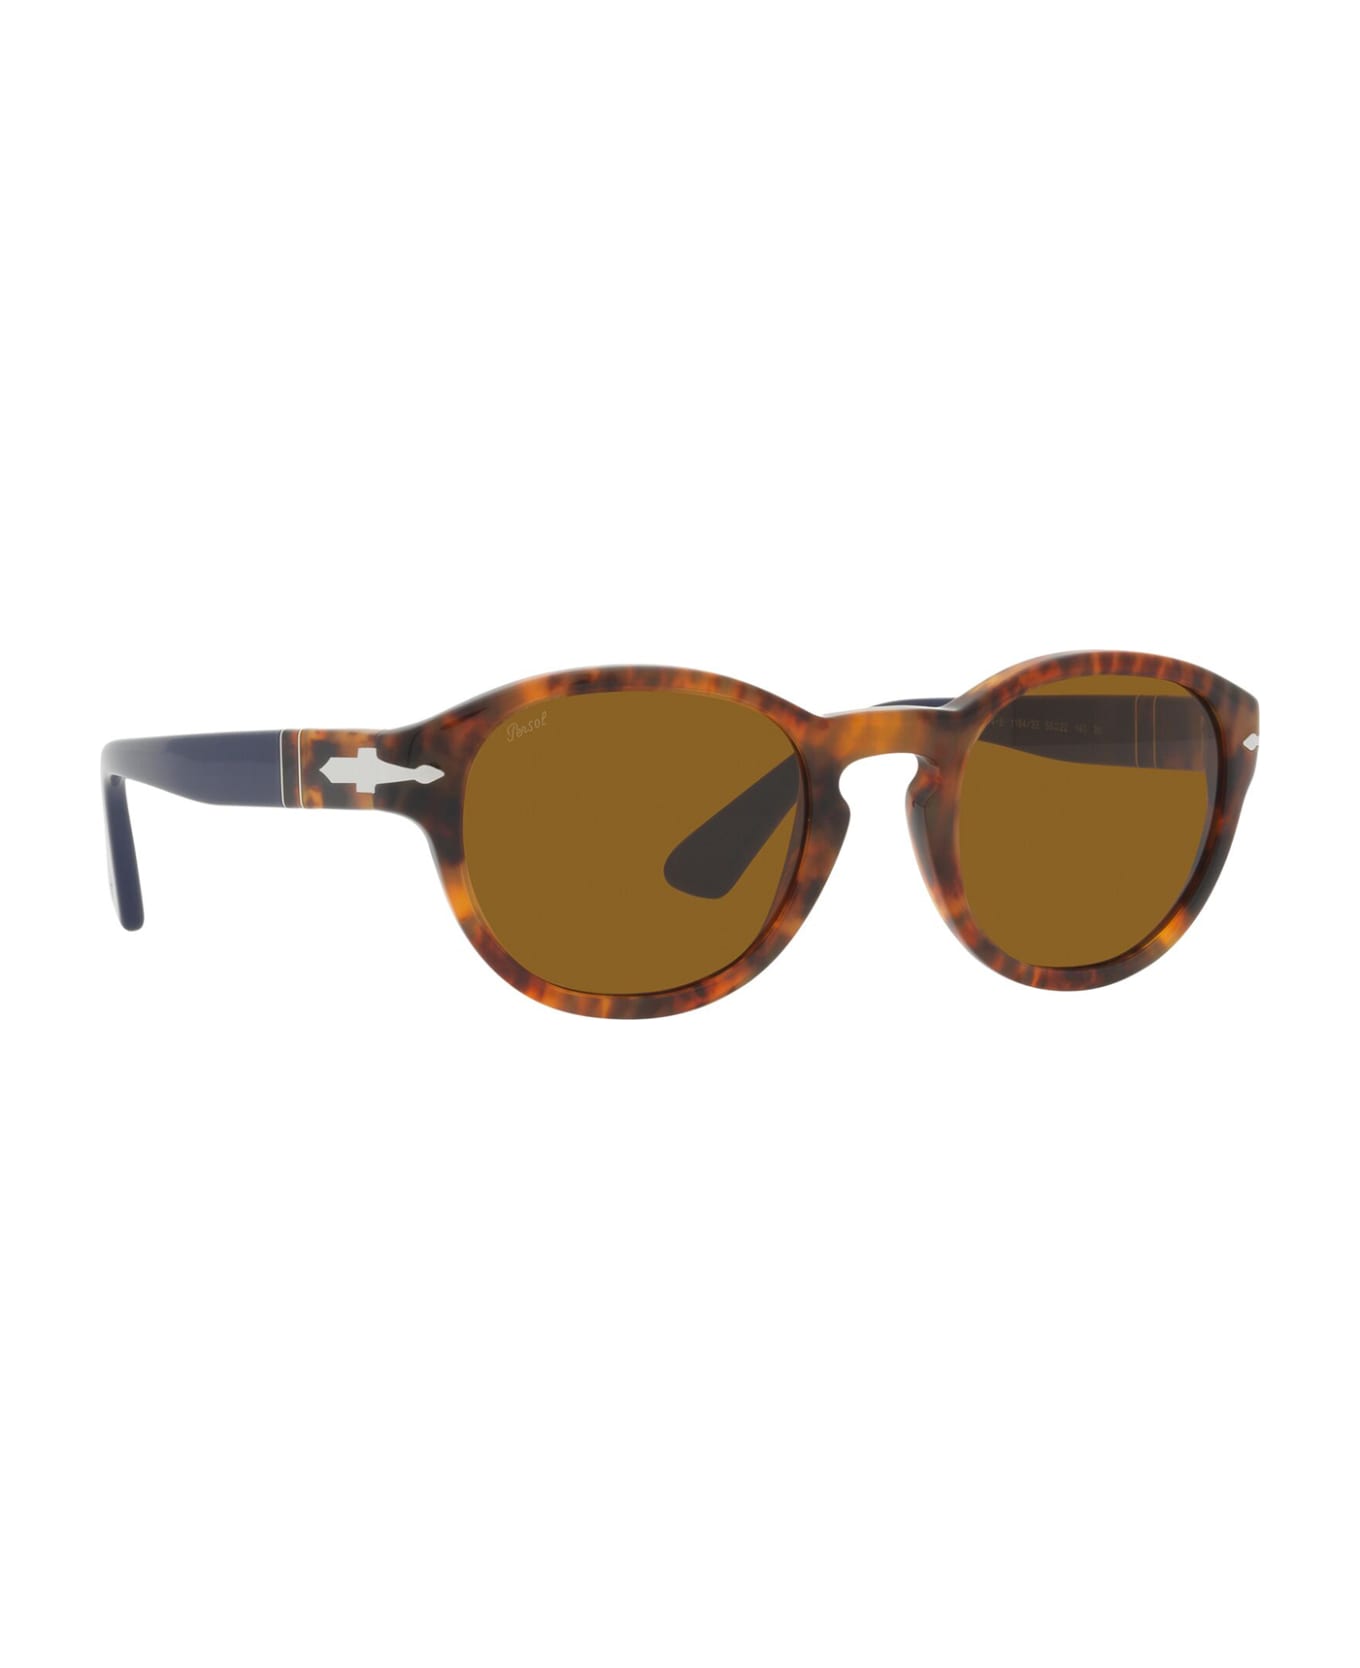 Persol Po3304s Brown/tortoise Sun-Staches Sunglasses - Brown/tortoise Sun-Staches